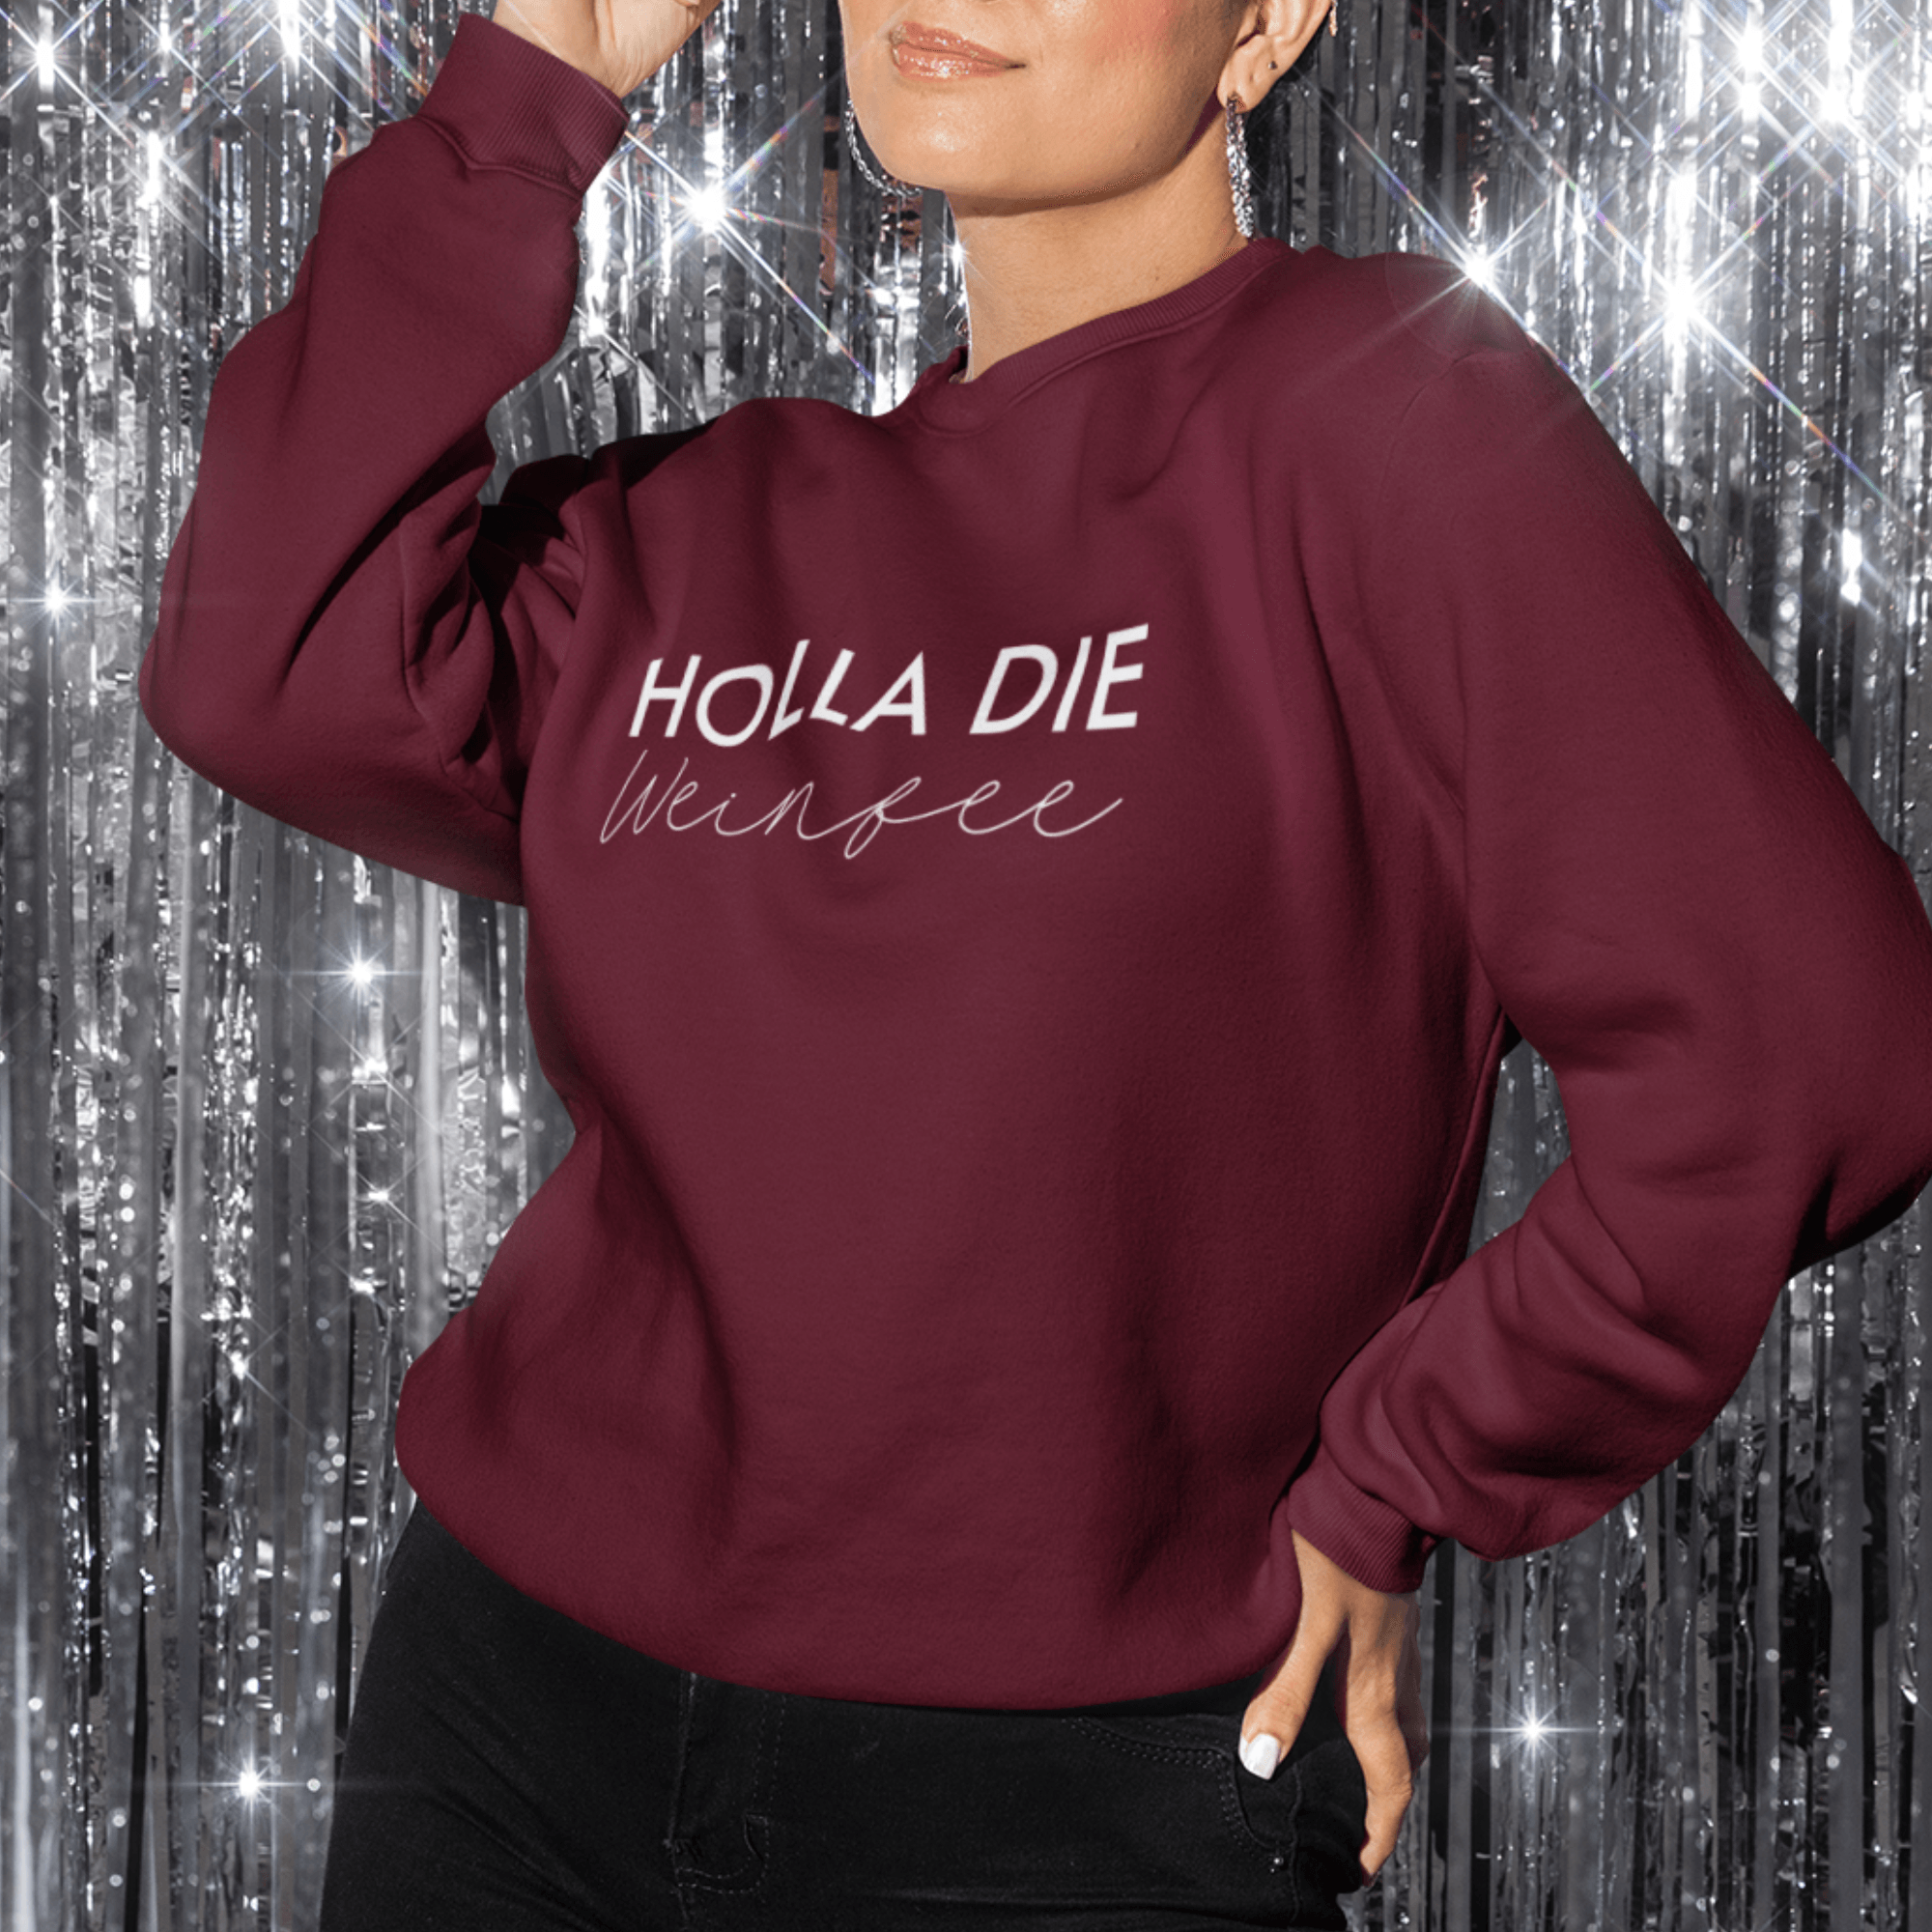 HOLLA DIE WEINFEE - Relaxed Sweatshirt - einschenken24.de